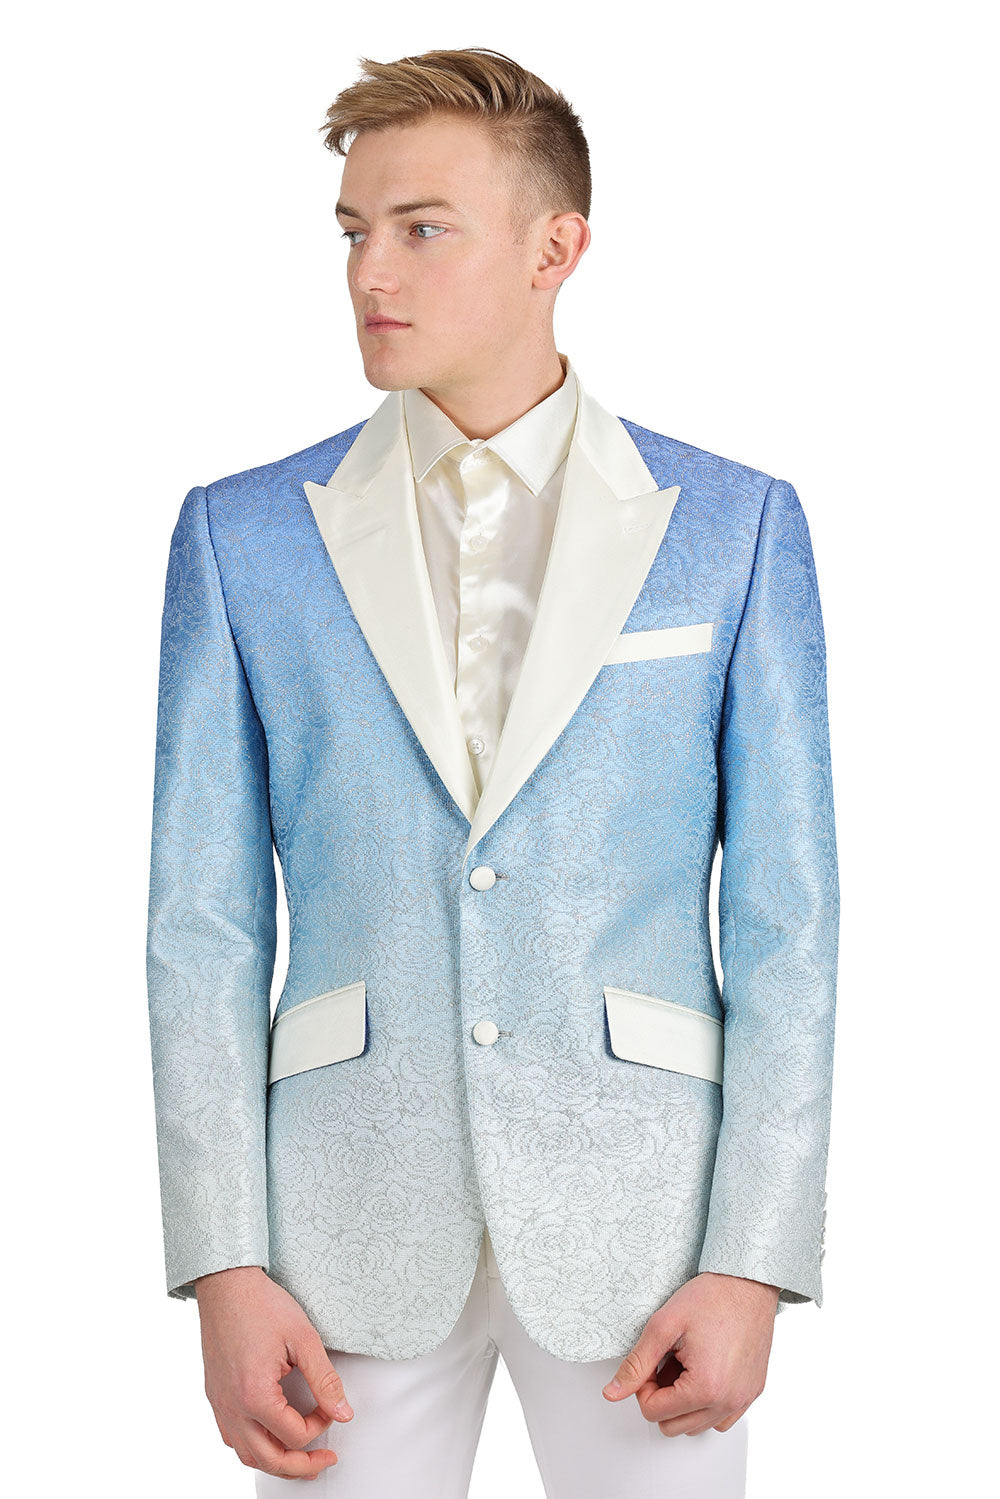 BARABAS Men's Two-Tone Floral Pattern Design Notched Blazer 3BL02 Blue